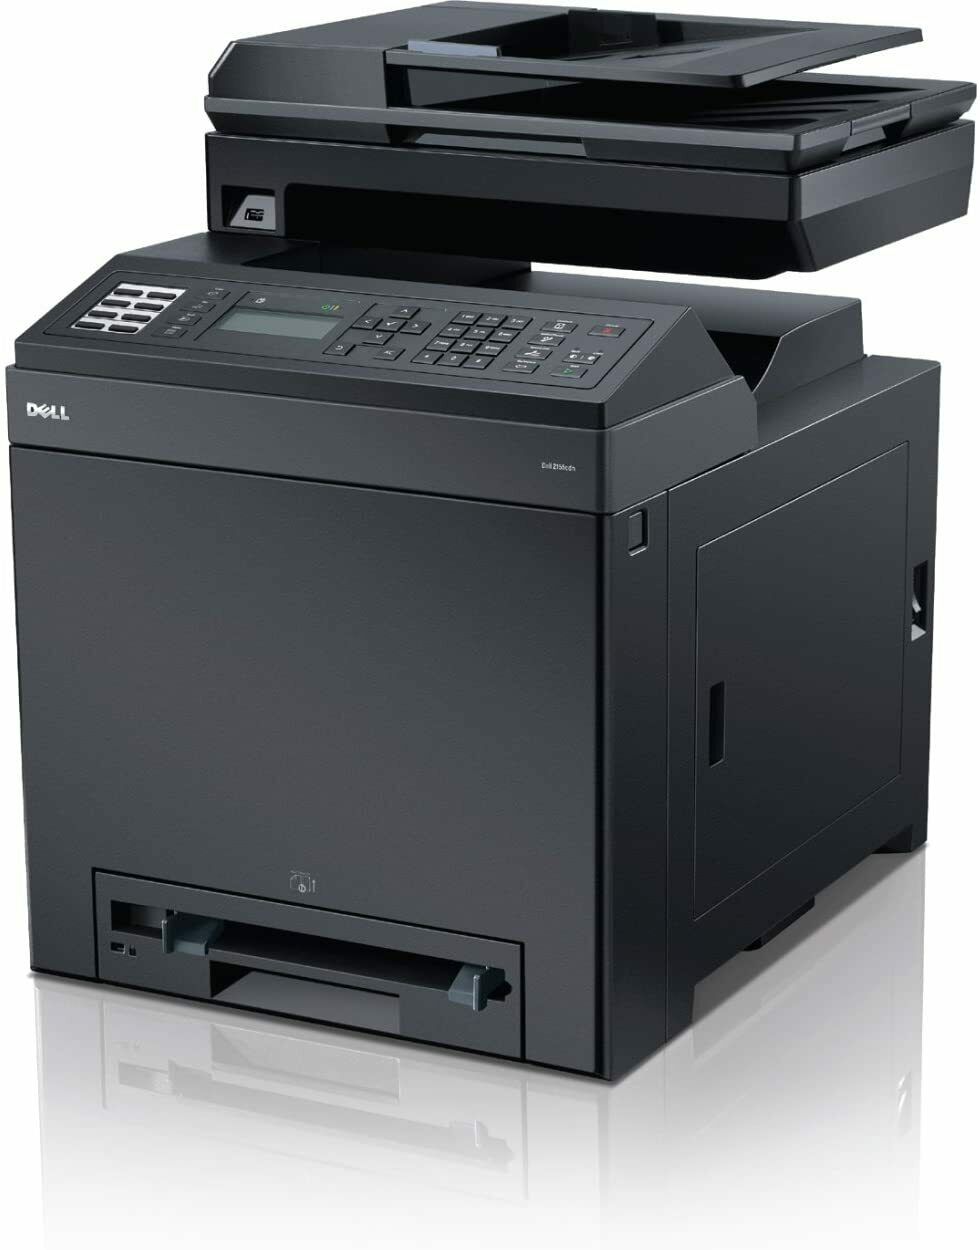 Dell 2155cdn Multifunction Color Laser Printer